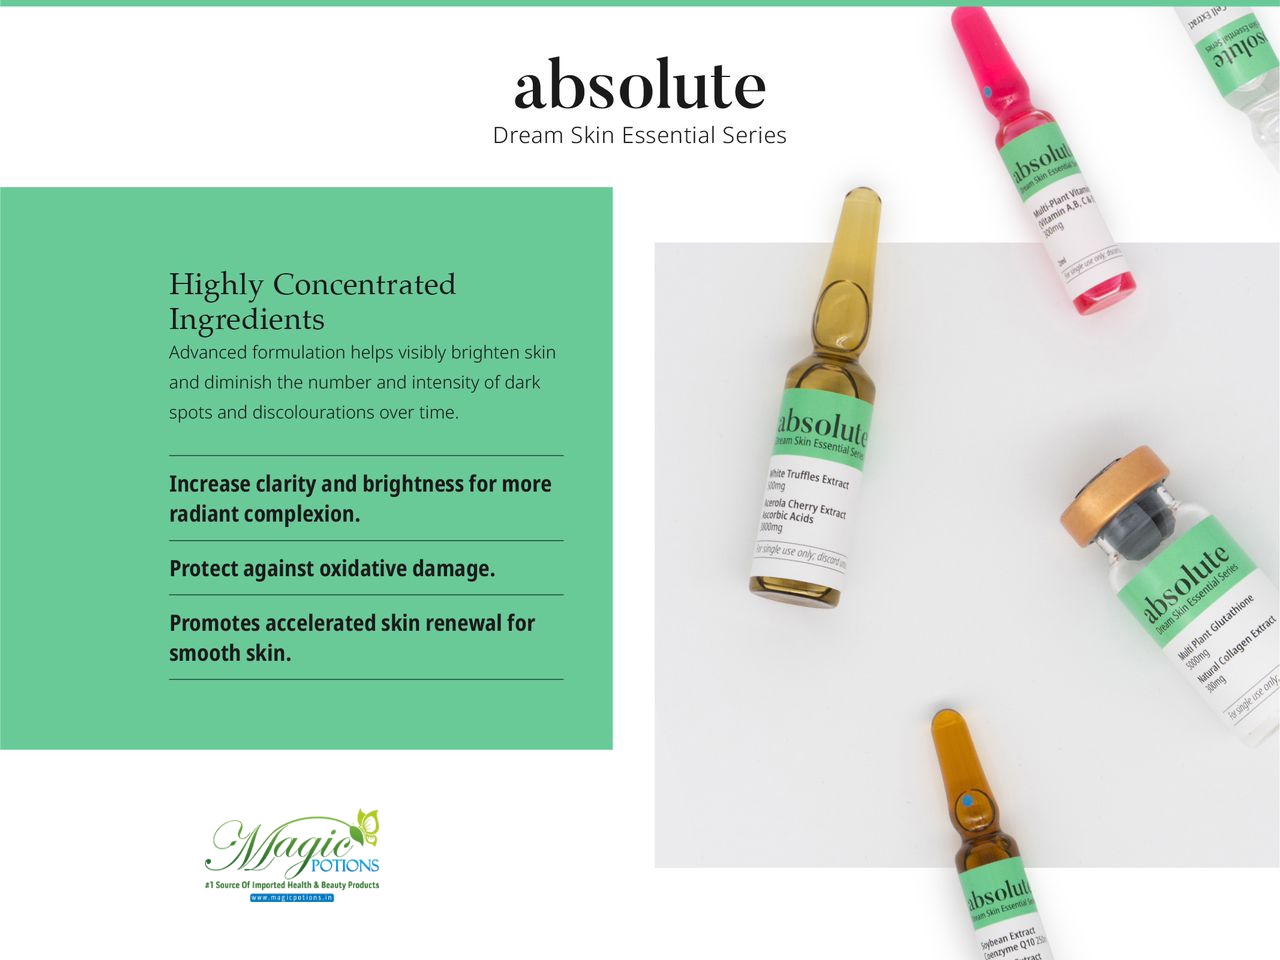 Absolute Dream Skin Essentials Glutathione Skin Whitening Injection